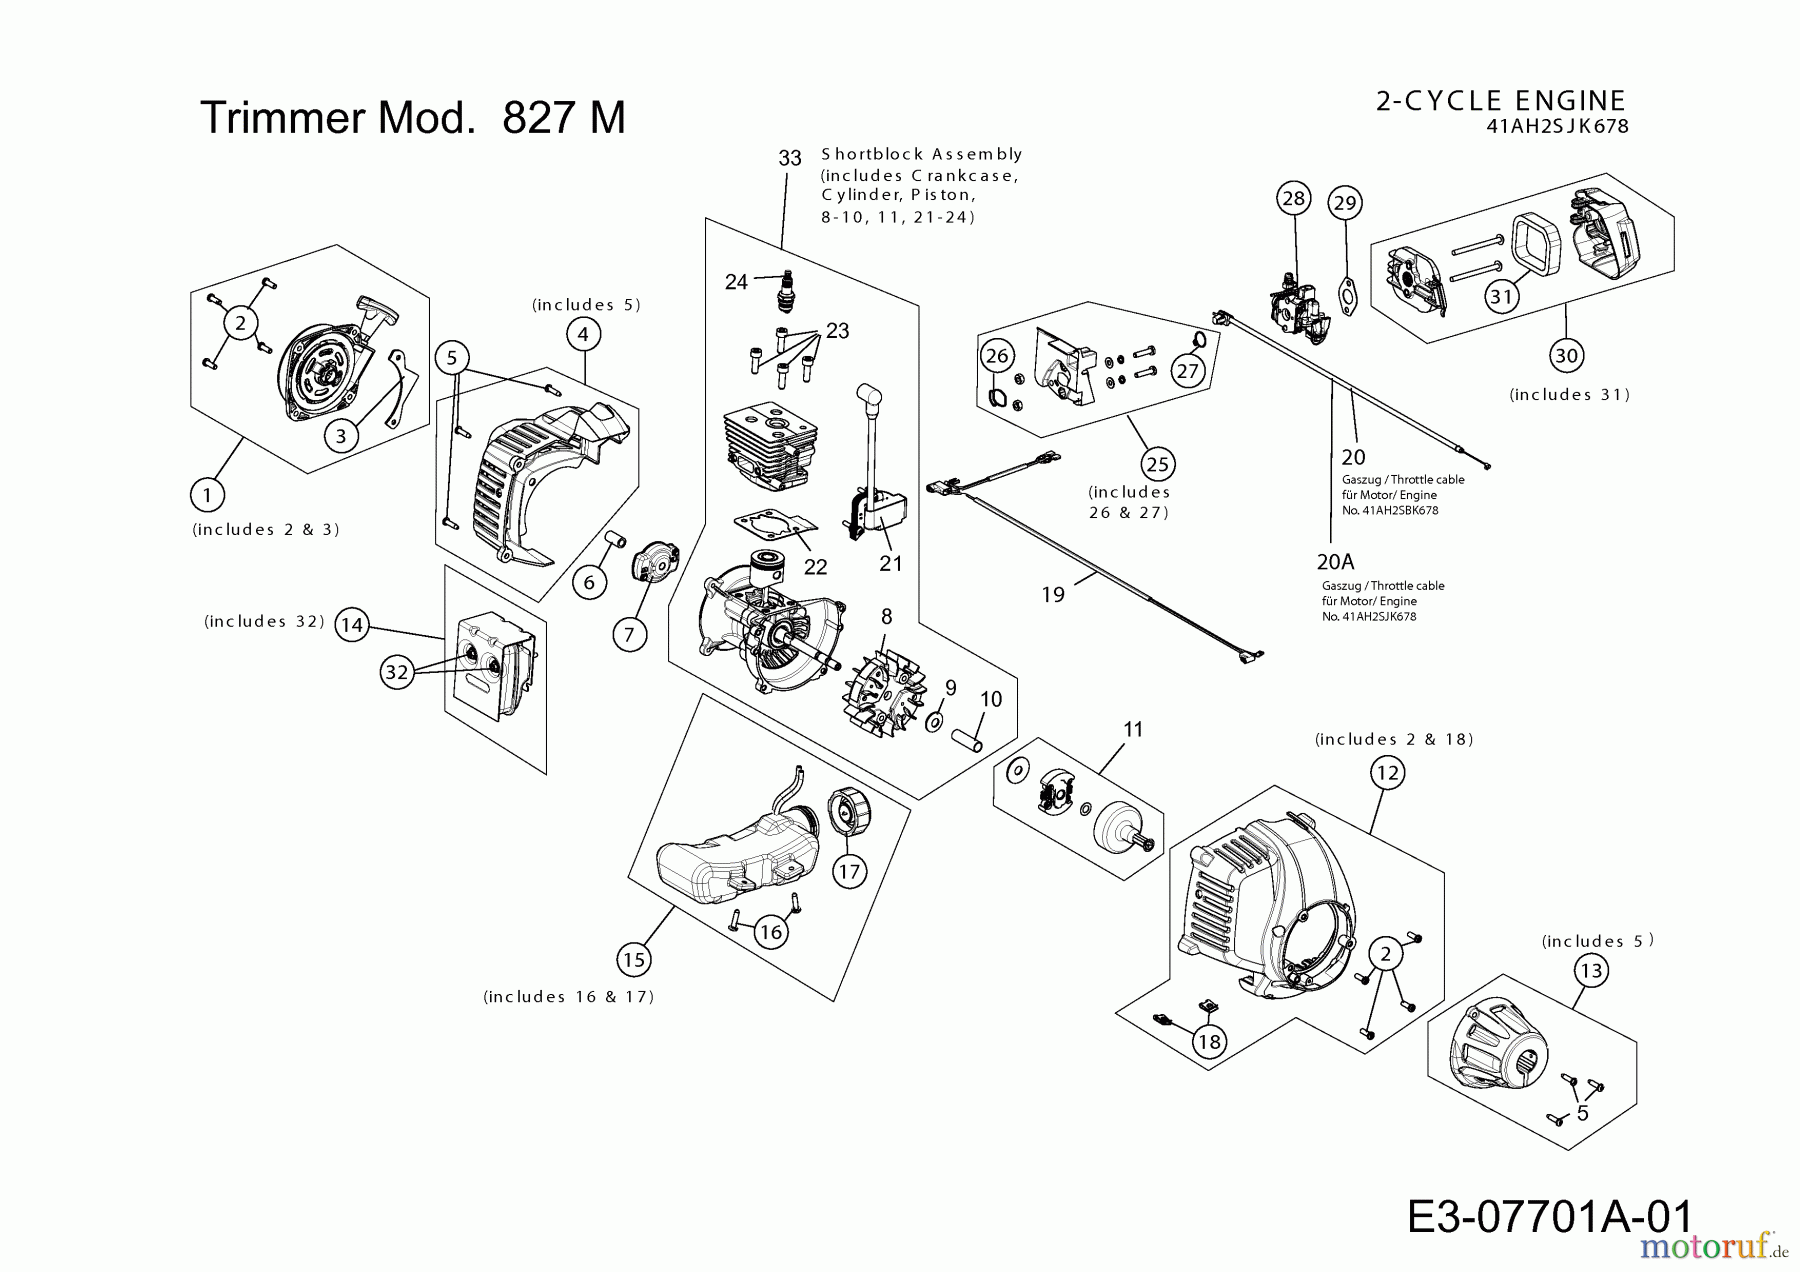  MTD Motorsensen 827 M 41AD7VT-678  (2012) Motor